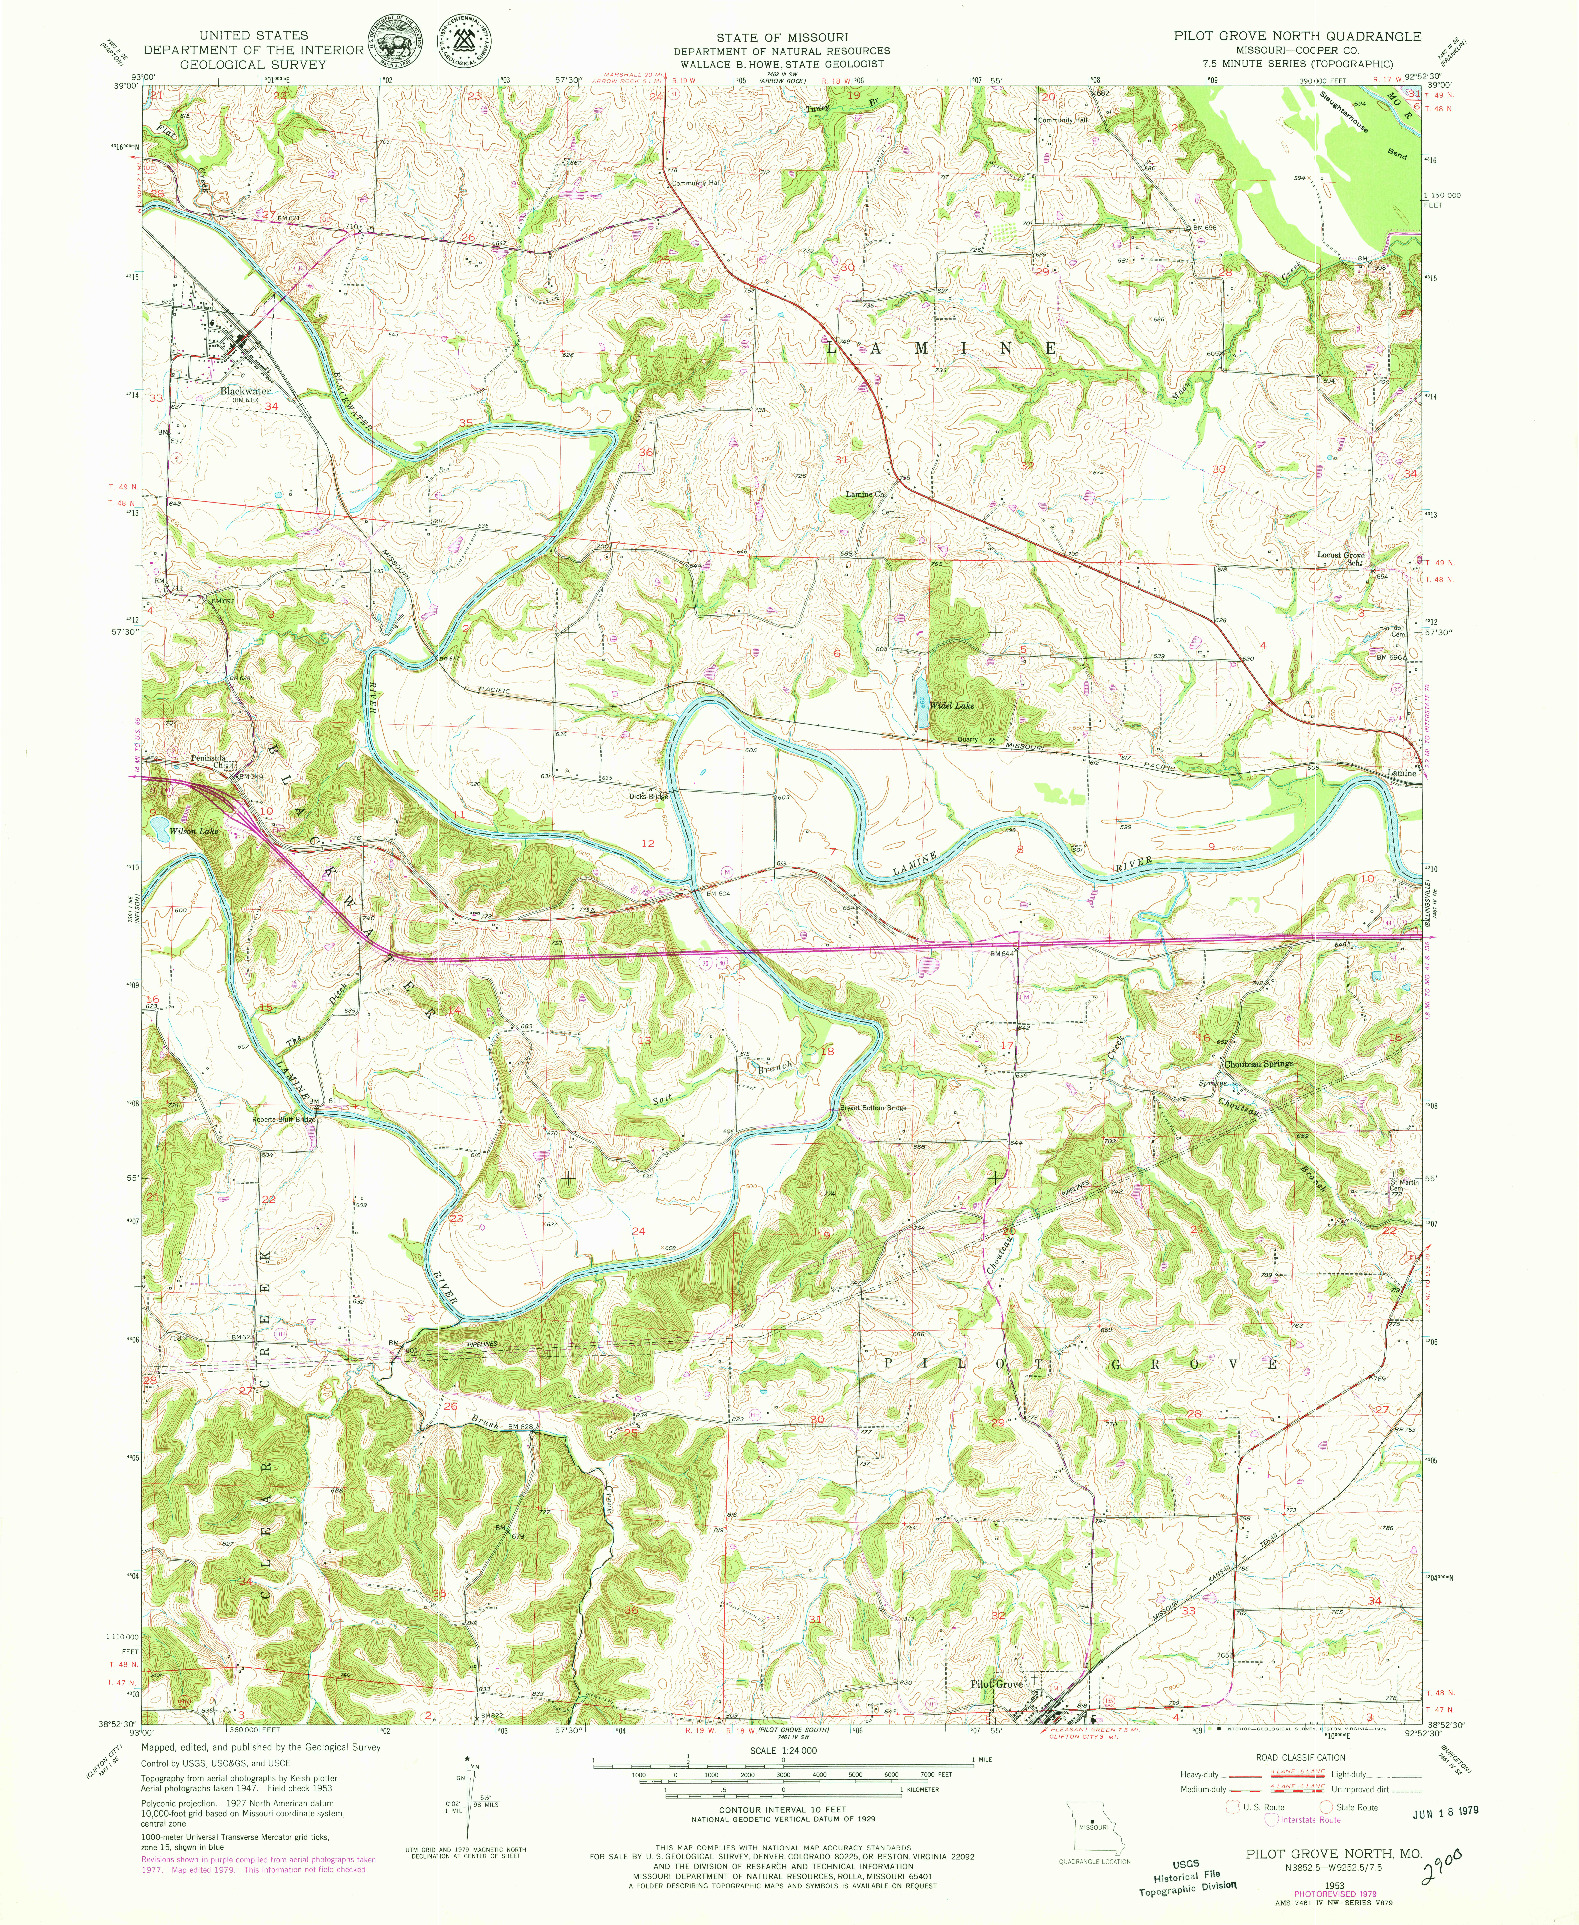 USGS 1:24000-SCALE QUADRANGLE FOR PILOT GROVE NORTH, MO 1953